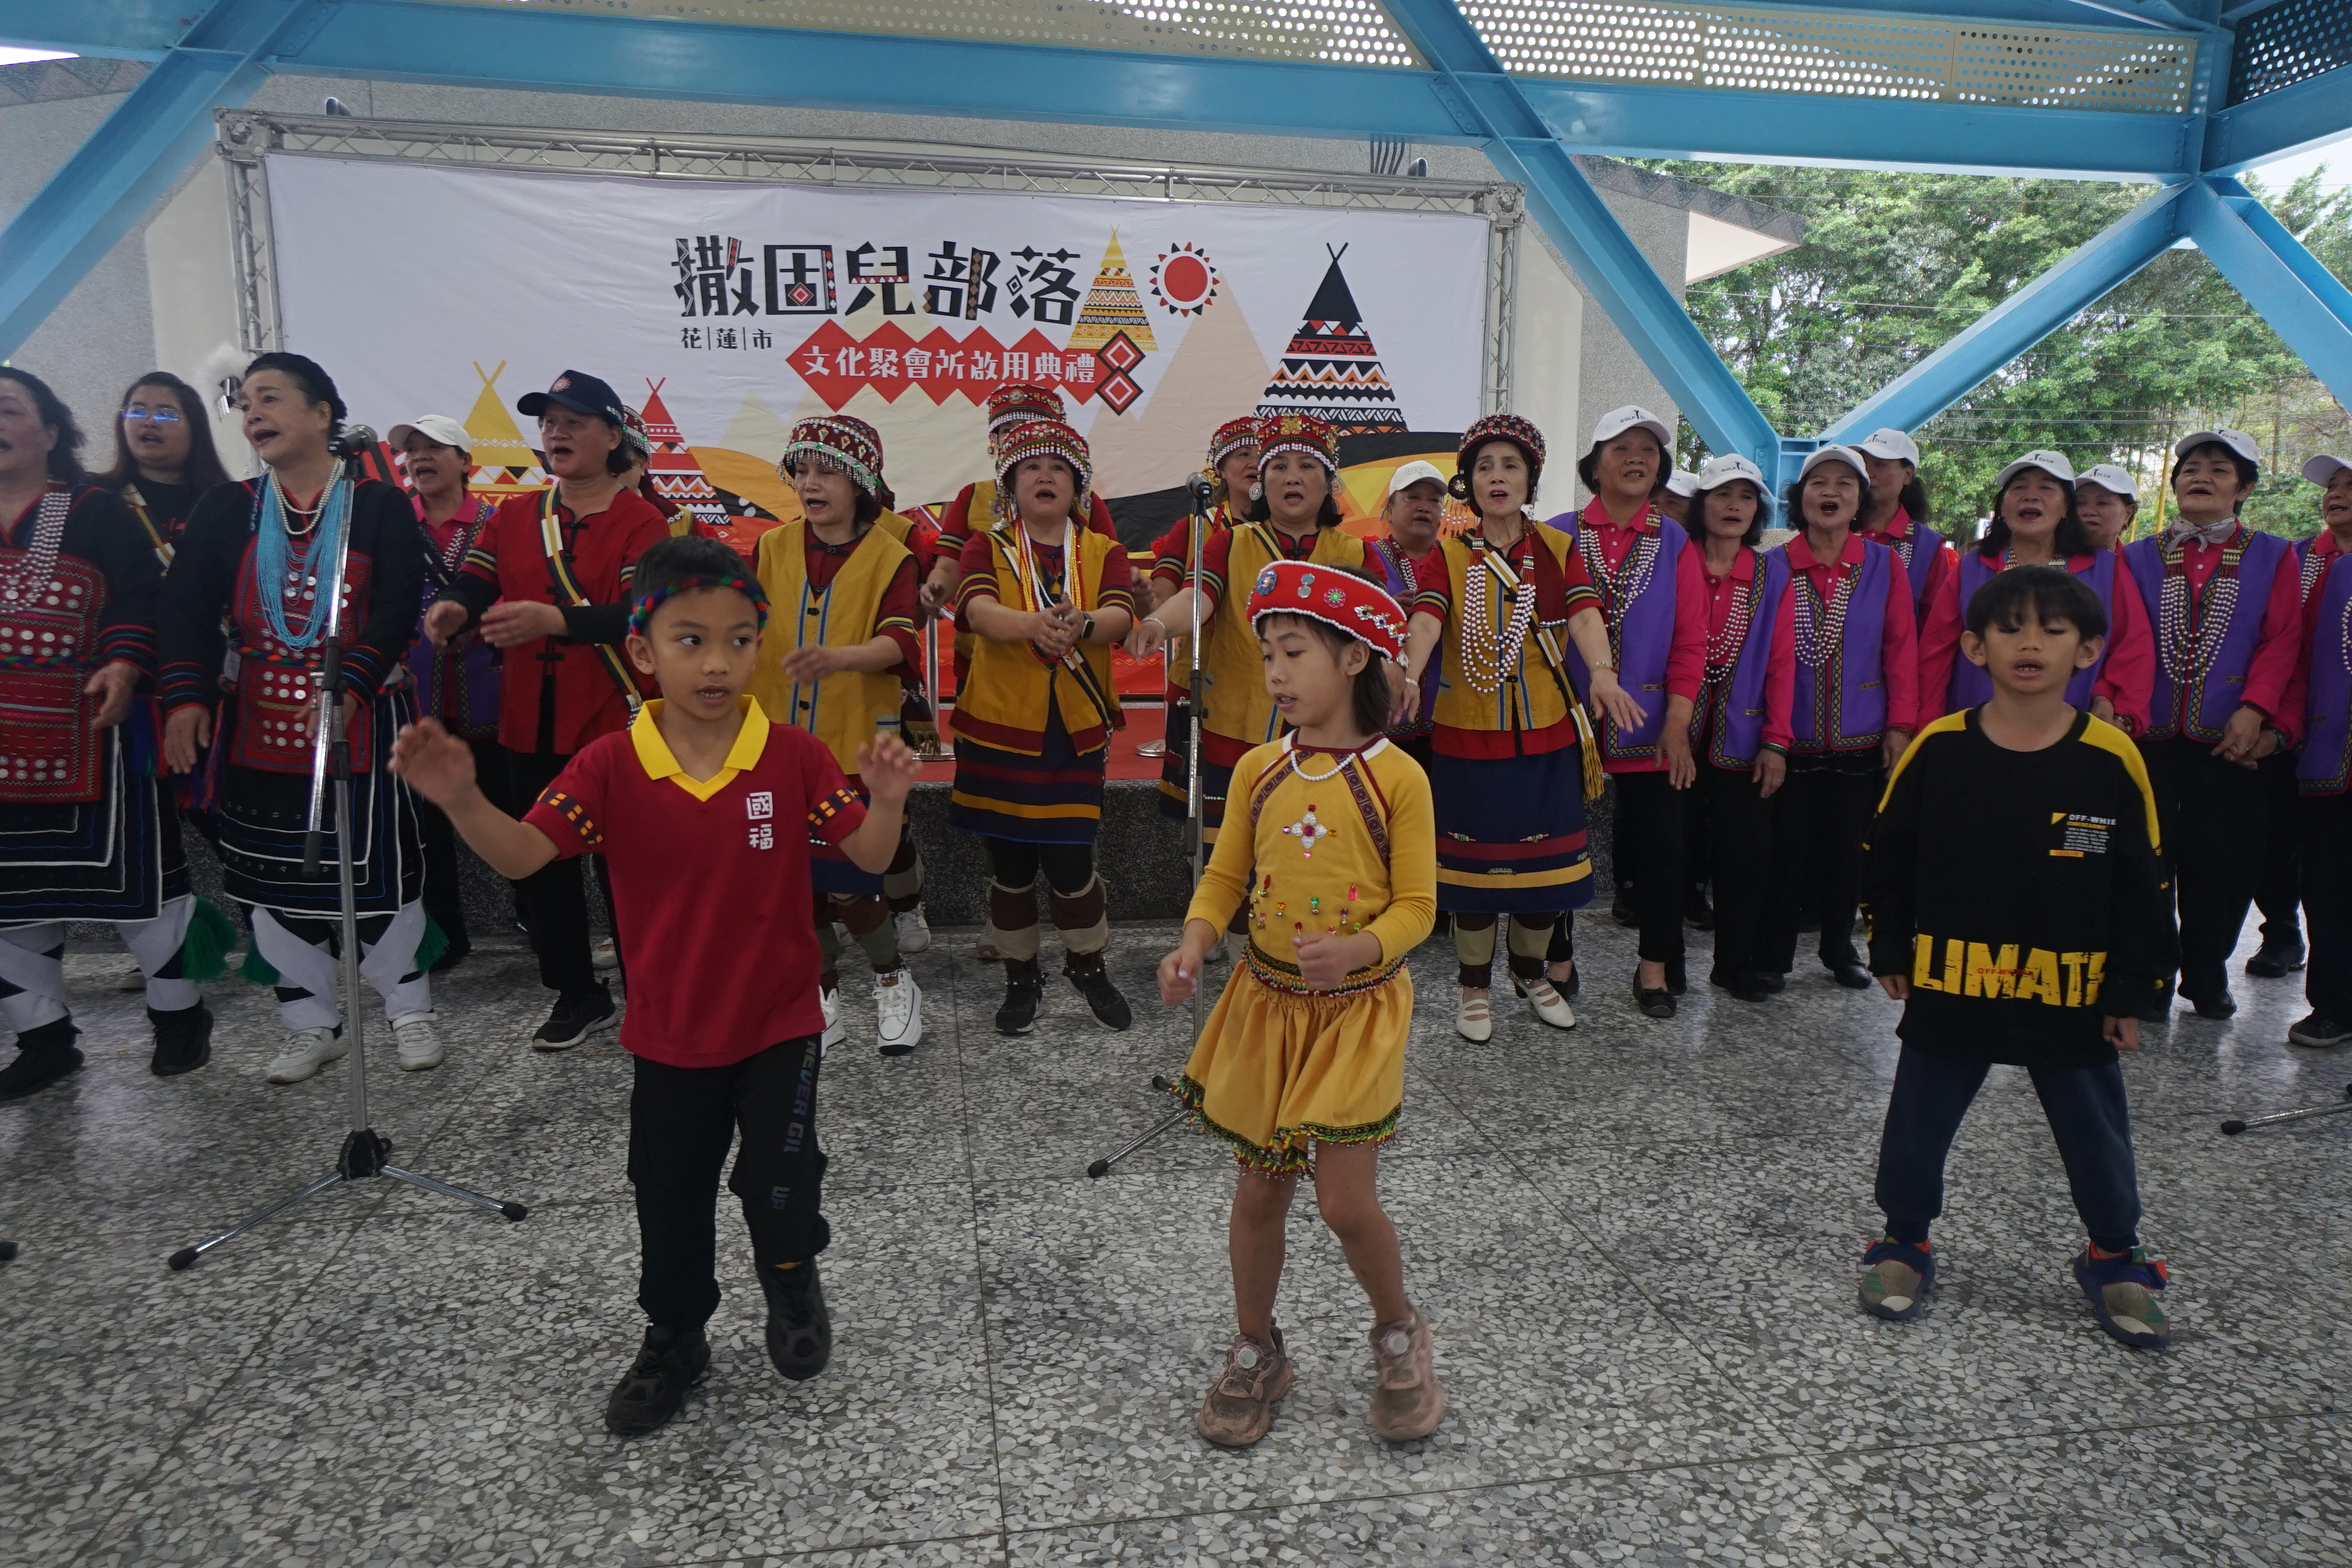 花莲市撒固儿部落聚会所今天启用，部落族人歌舞欢迎庆祝。记者王燕华／摄影